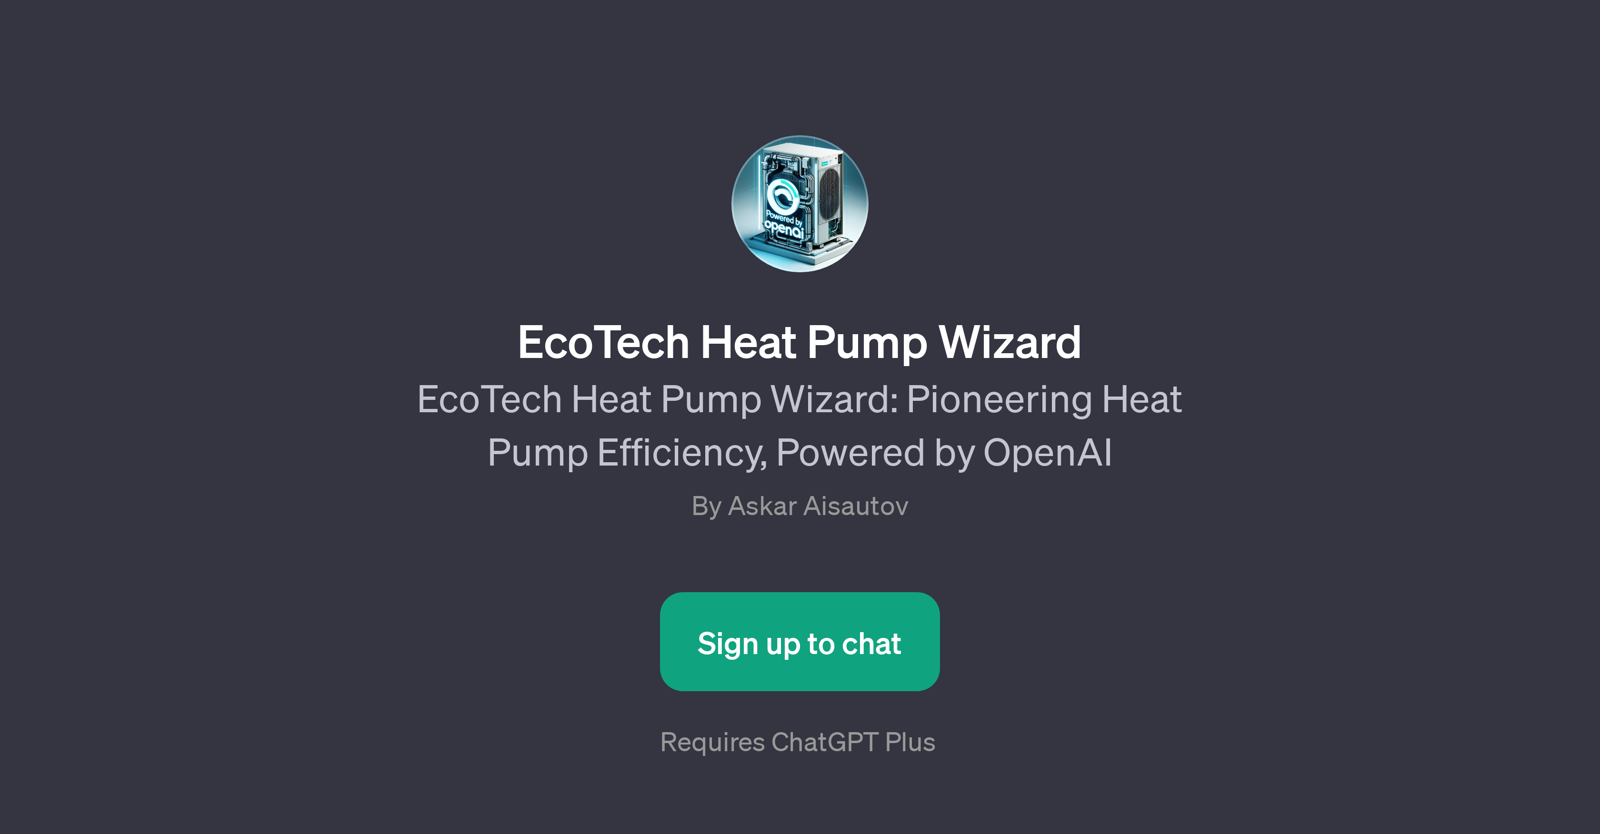 EcoTech Heat Pump Wizard website